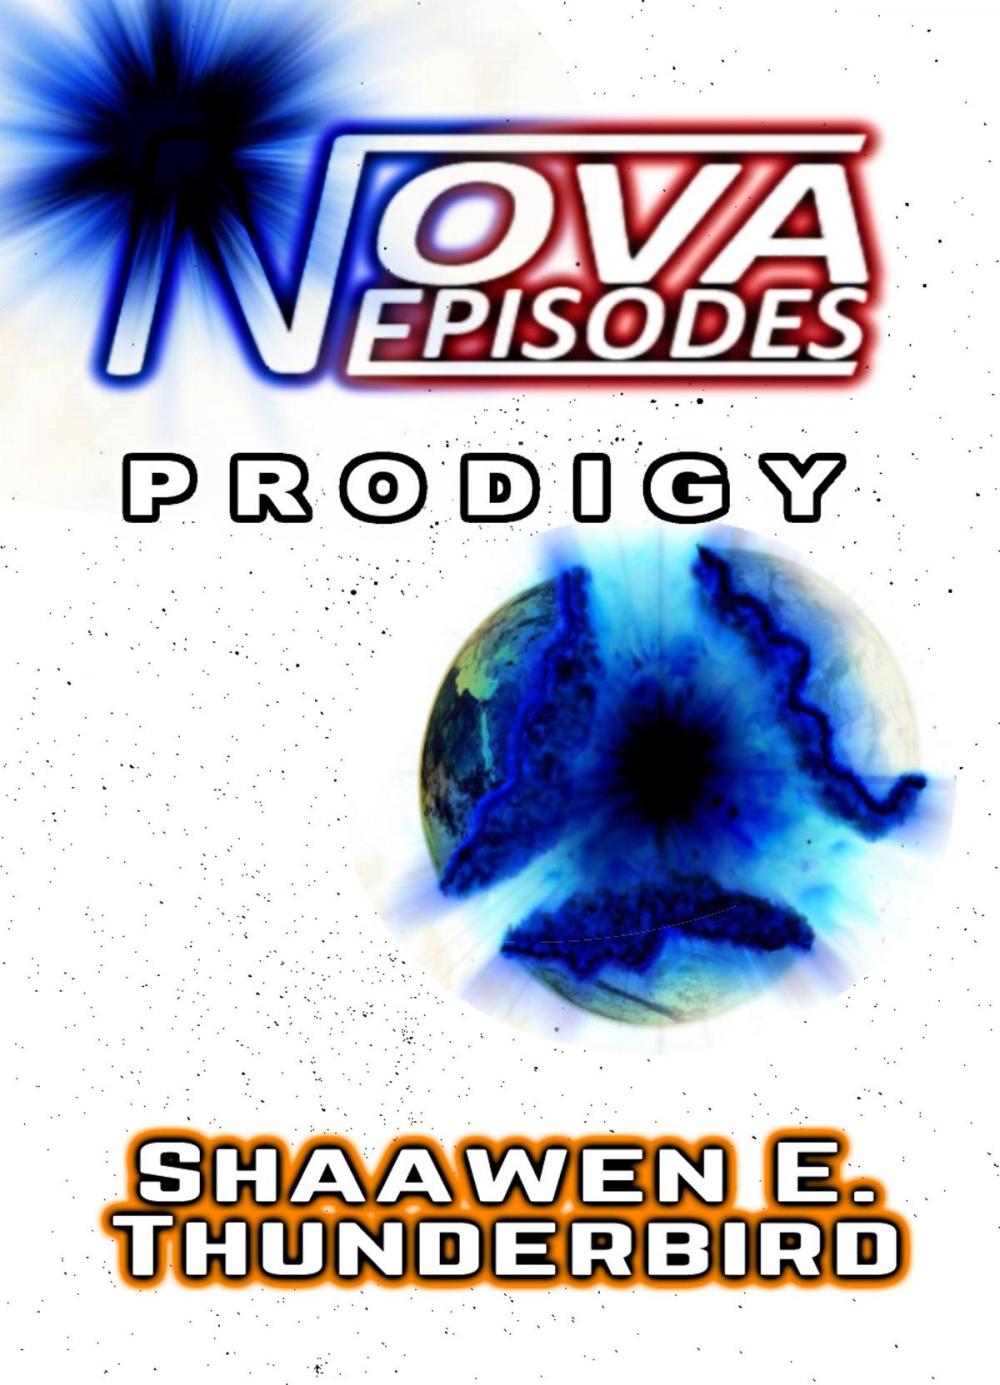 Big bigCover of Nova Episodes: Prodigy